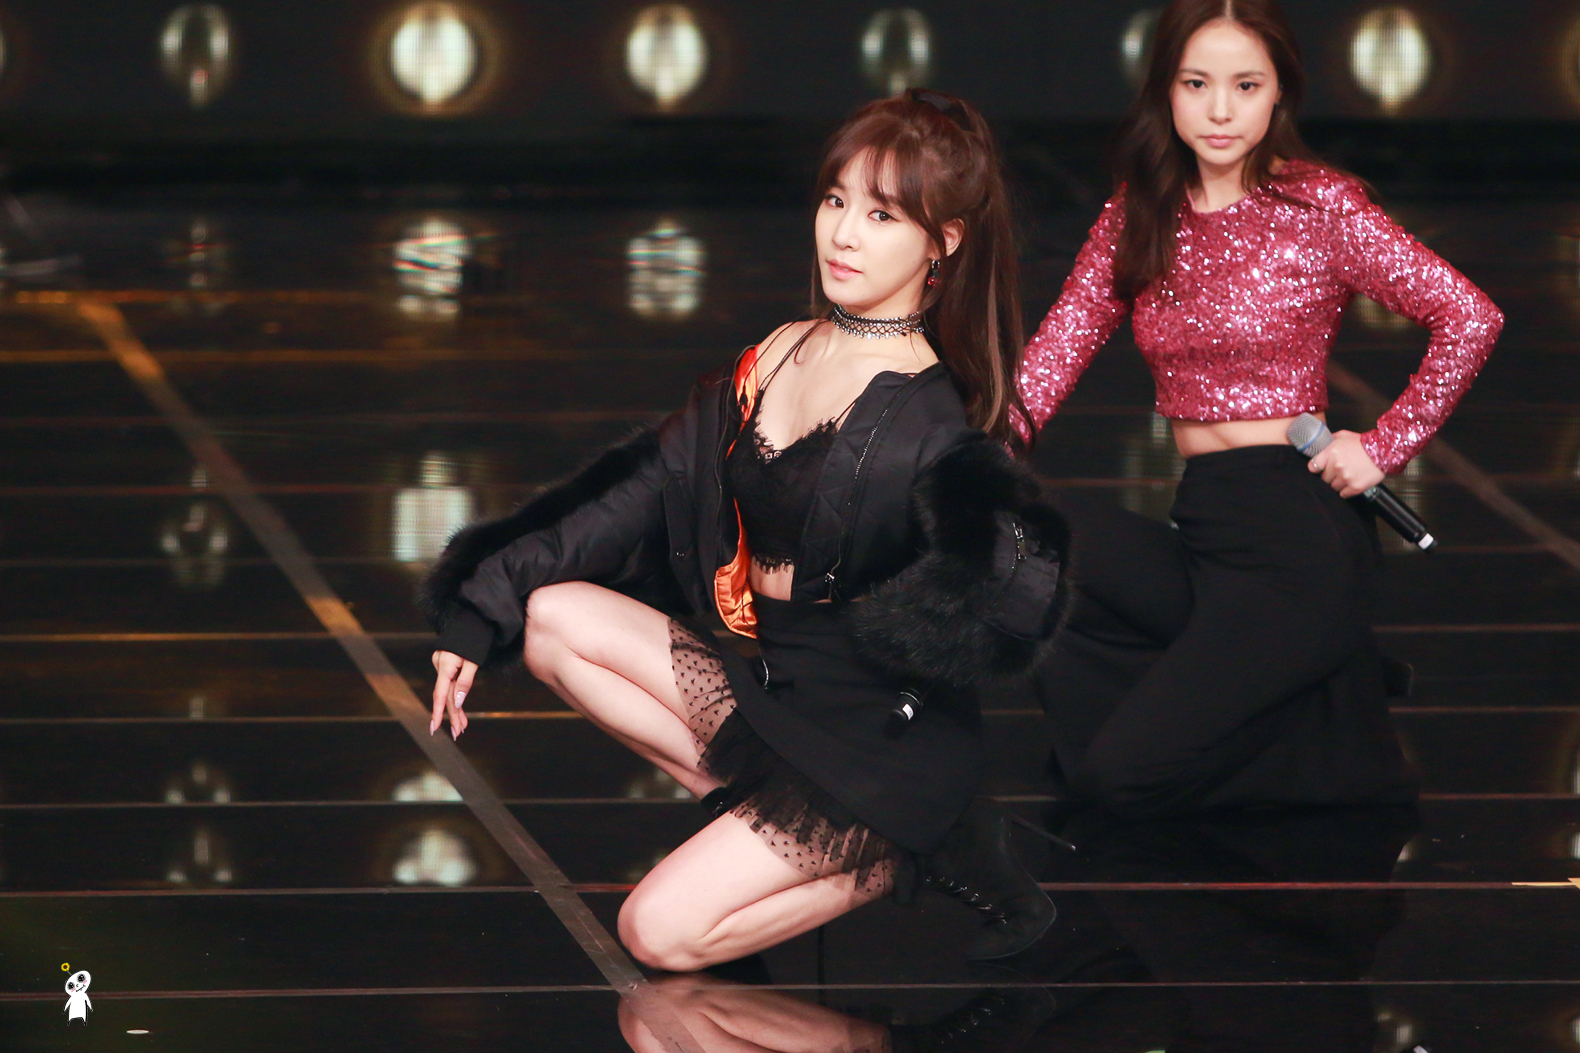 [PIC][24-12-2016]Tiffany tham dự và biểu diễn tại “2016 KBS Entertainment Awards” vào hôm nay - Page 3 24788540586B700904B120